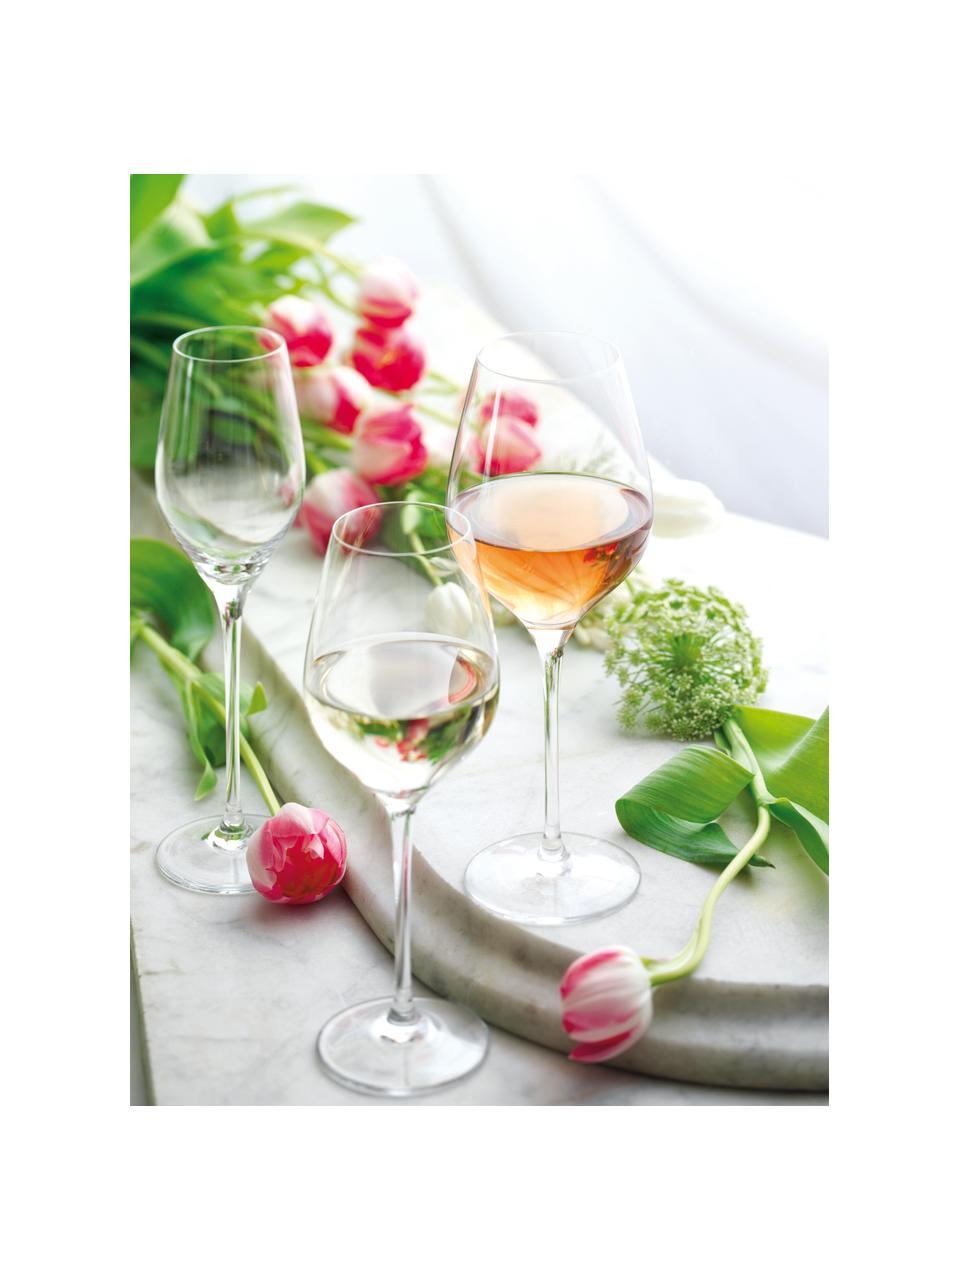 Verres à vin blanc en cristal Exquisit, 6 pièces, Cristal, Transparent, Ø 8 x haut. 23 cm, 420 ml